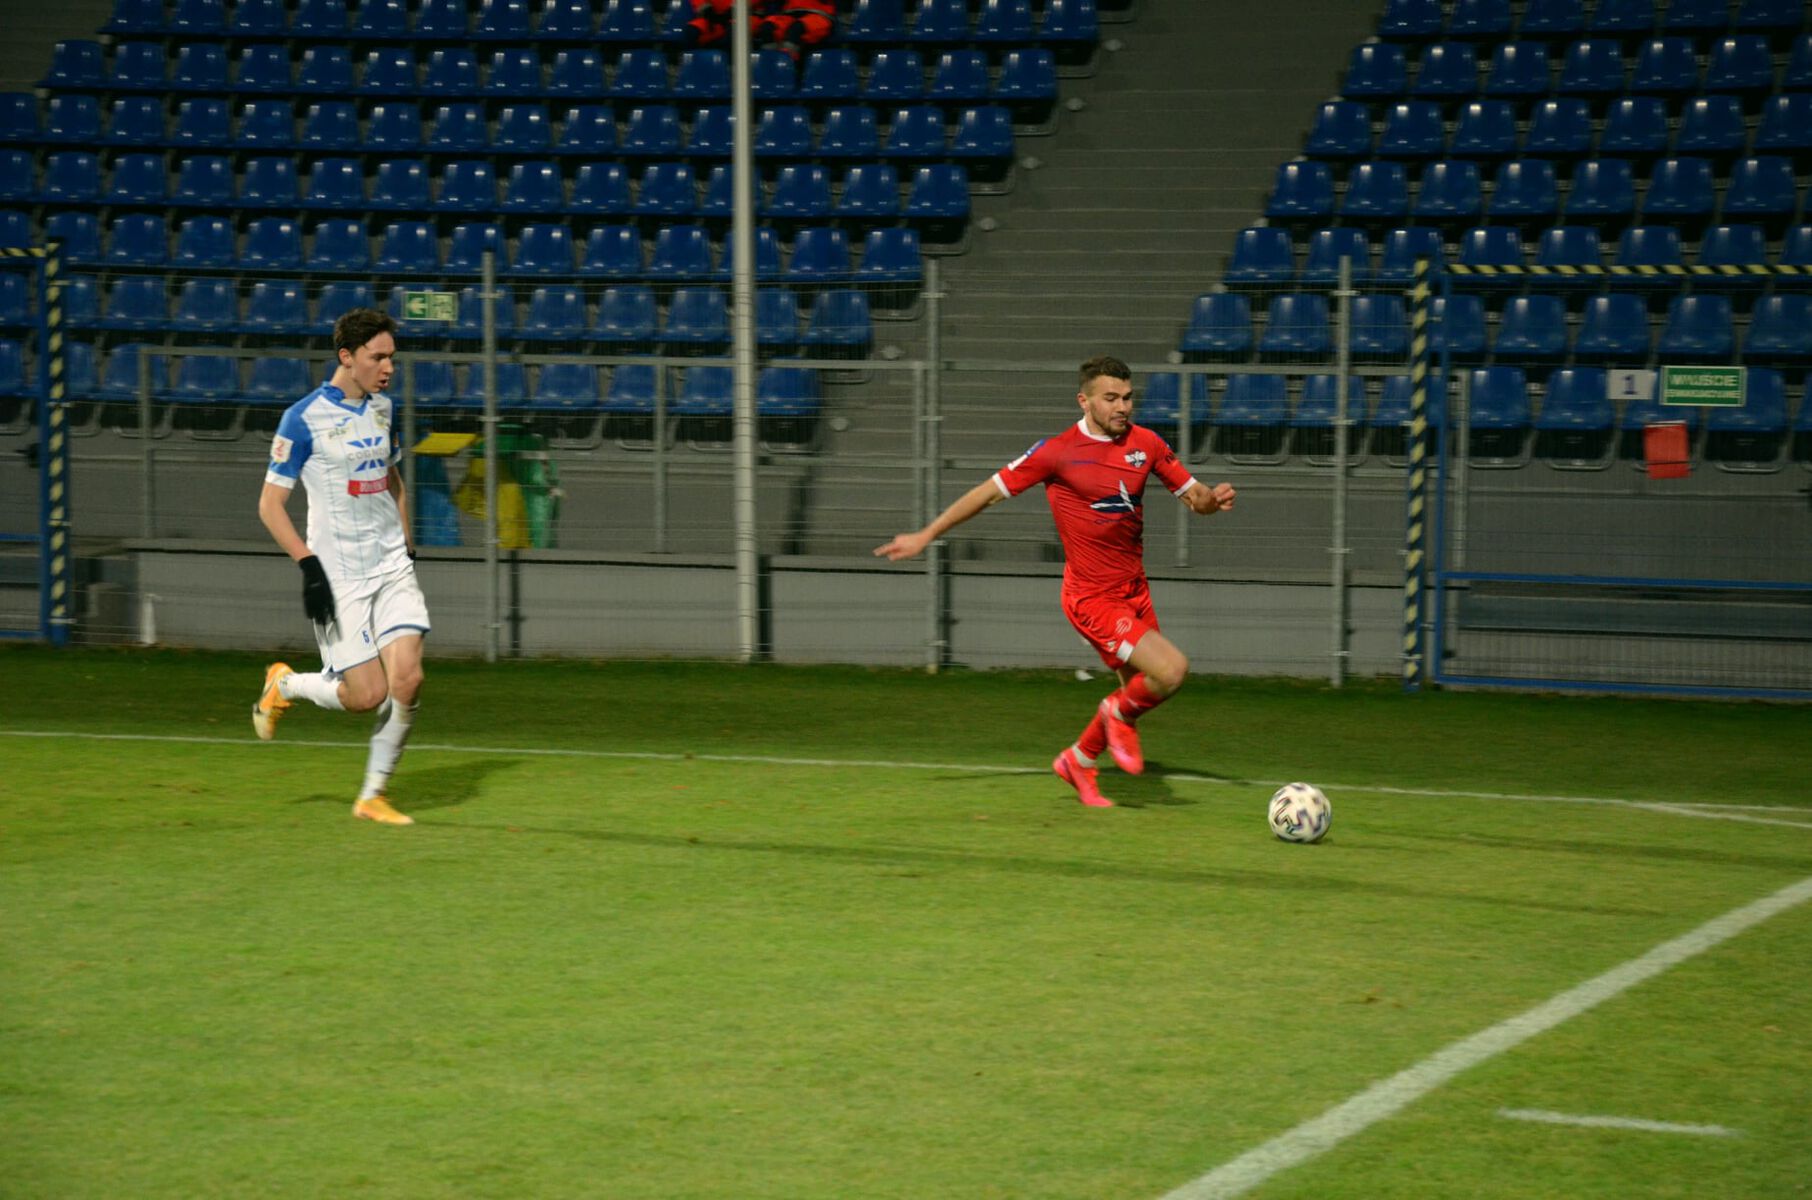 W minioną sobotę Sokół Ostróda wygrał 3:0 z Hutnikiem Kraków. Fot. s28